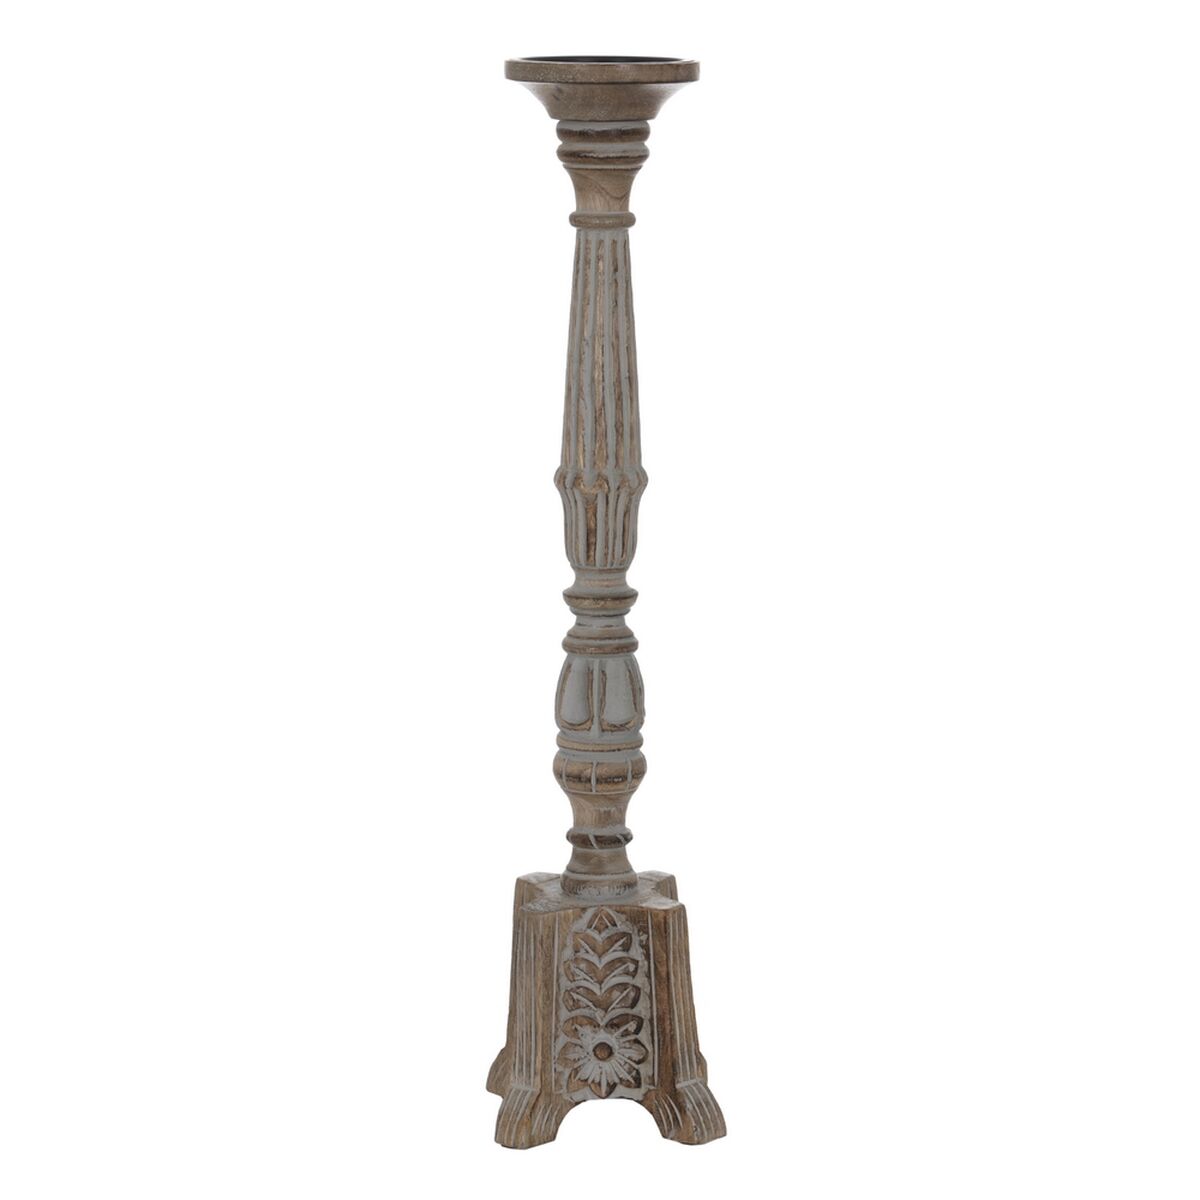 Настолна лампа Син Керамика 40 W 220-240 V 16 x 16 x 27 cm